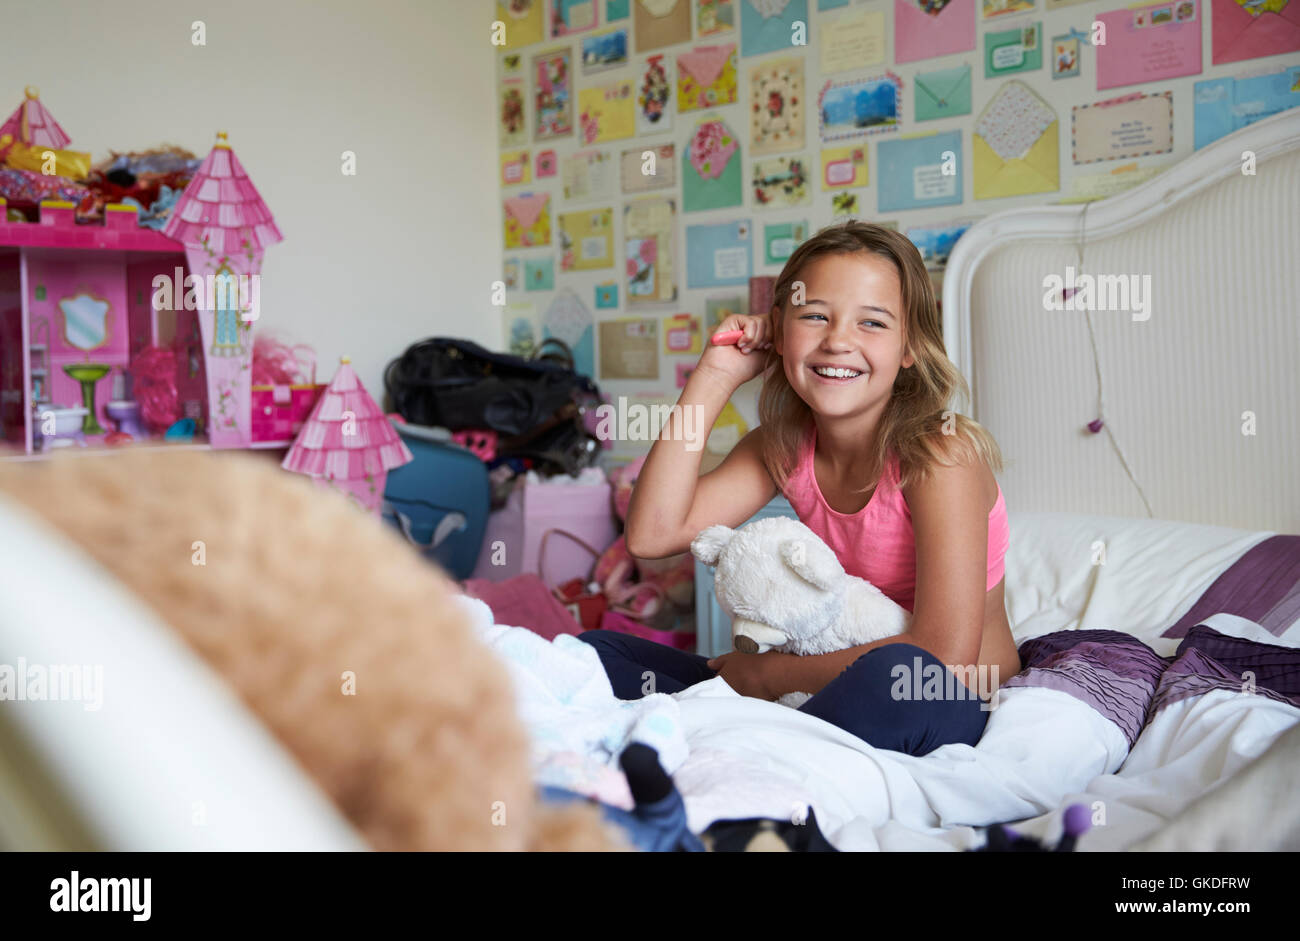 Sorridente ragazza seduta sul letto e spazzolare i capelli in camera da letto Foto Stock